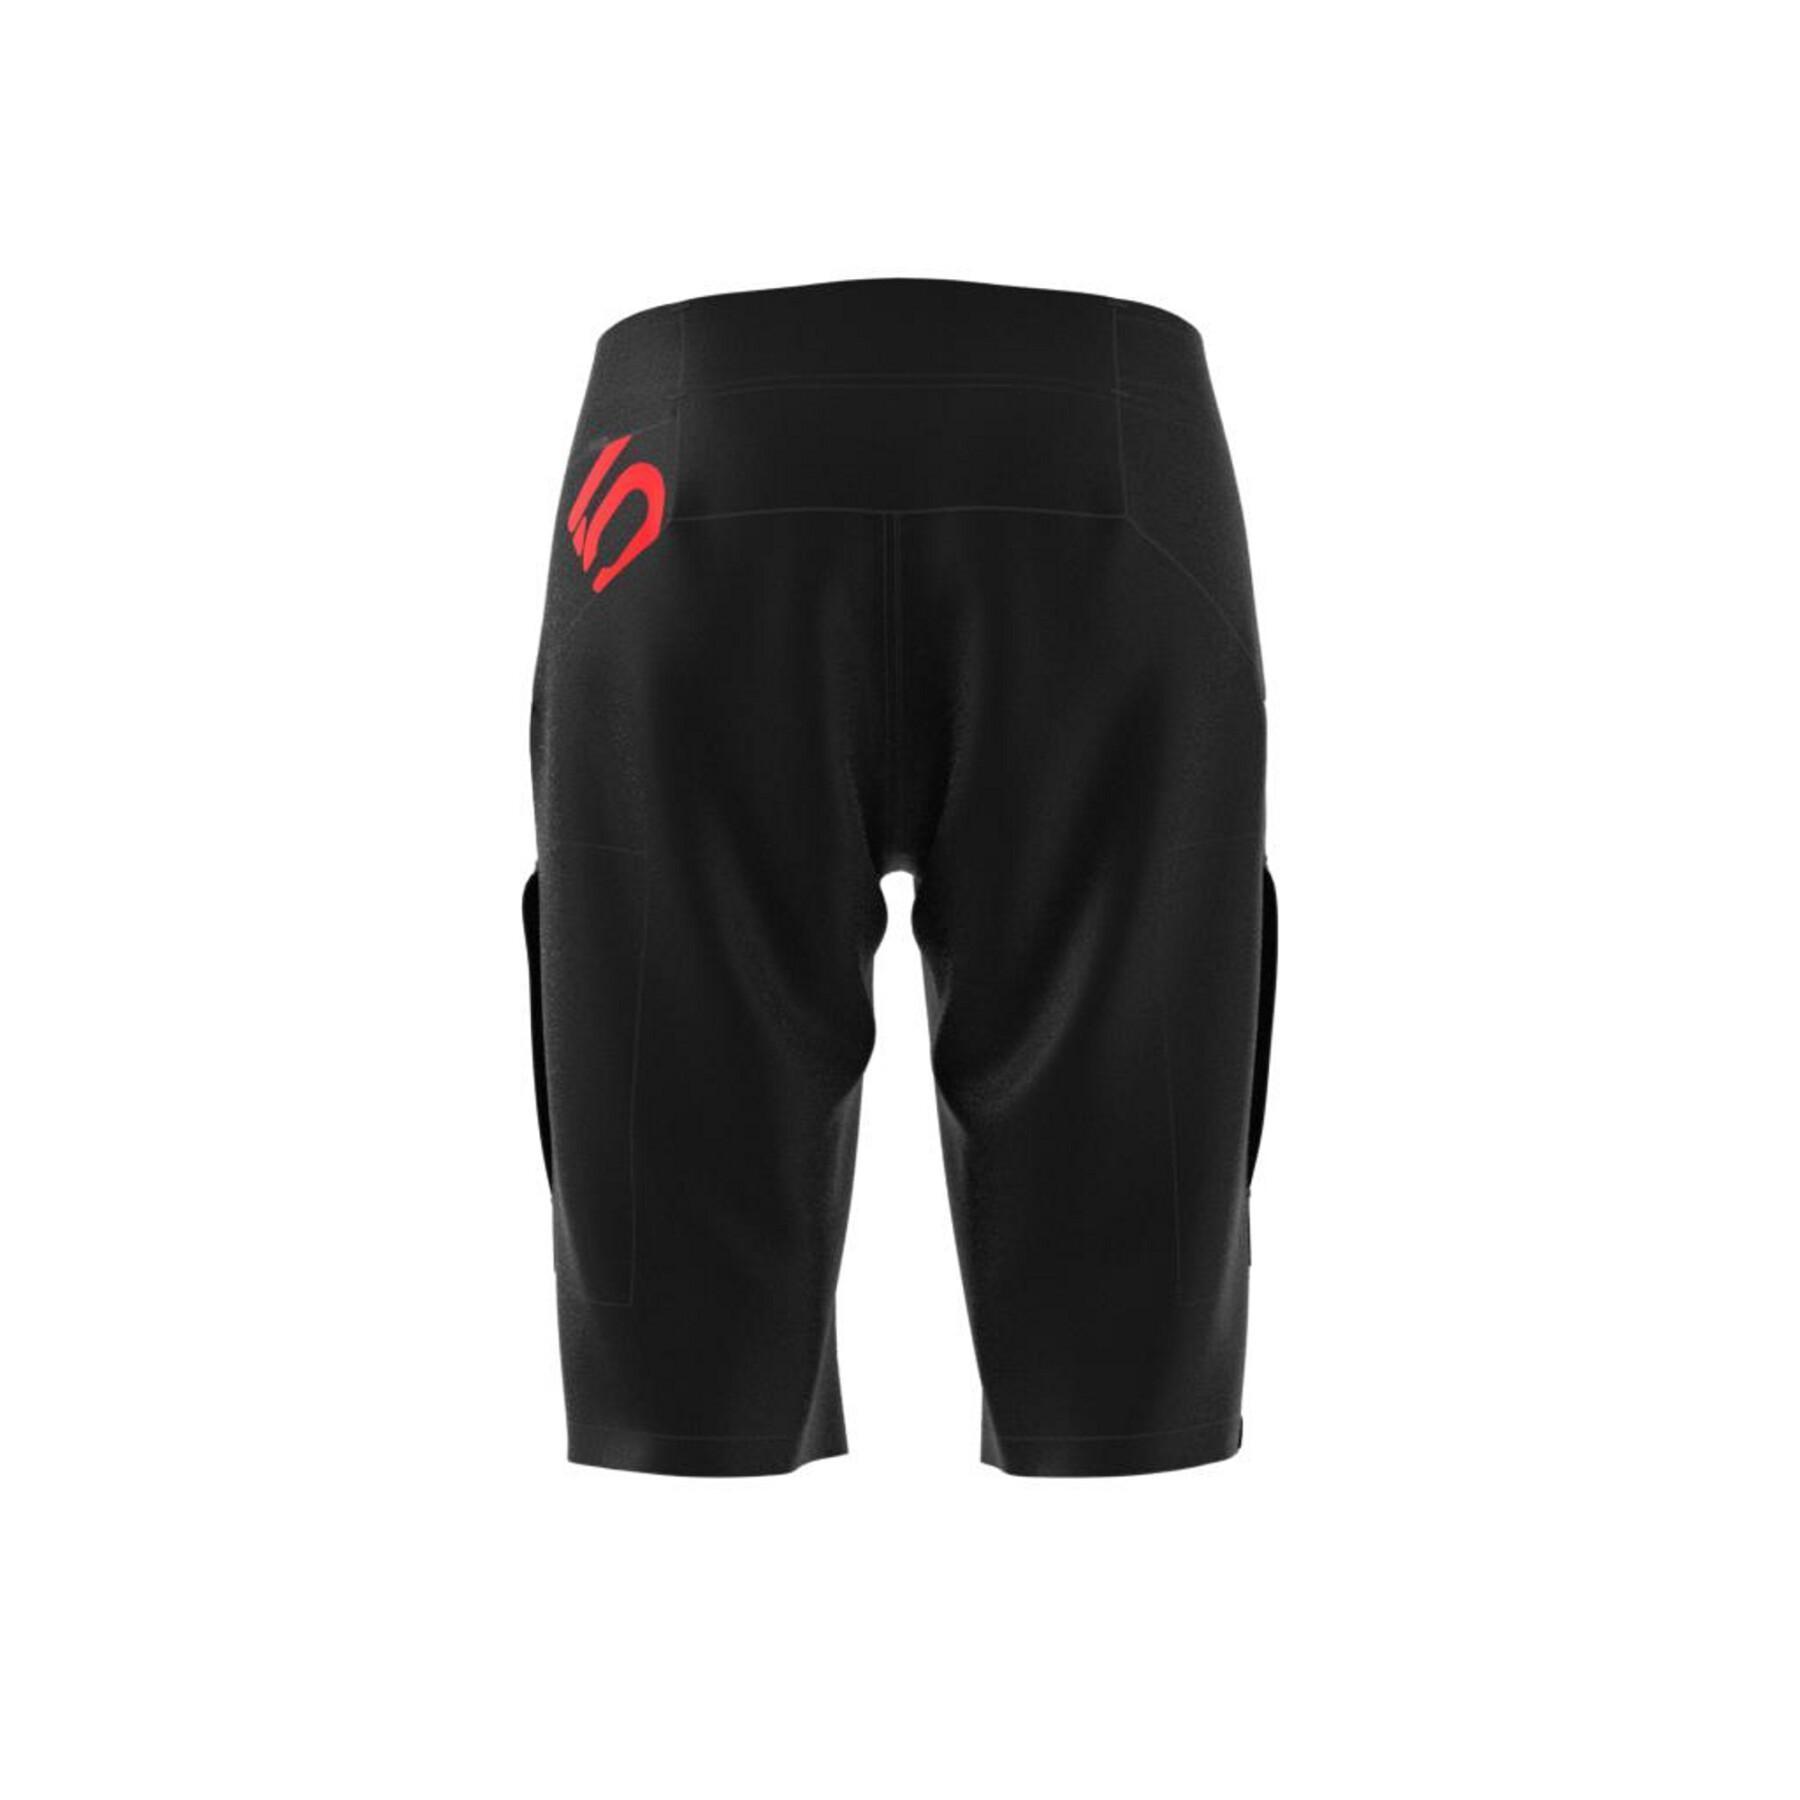 Bermuda shorts adidas 5.10 TrailX